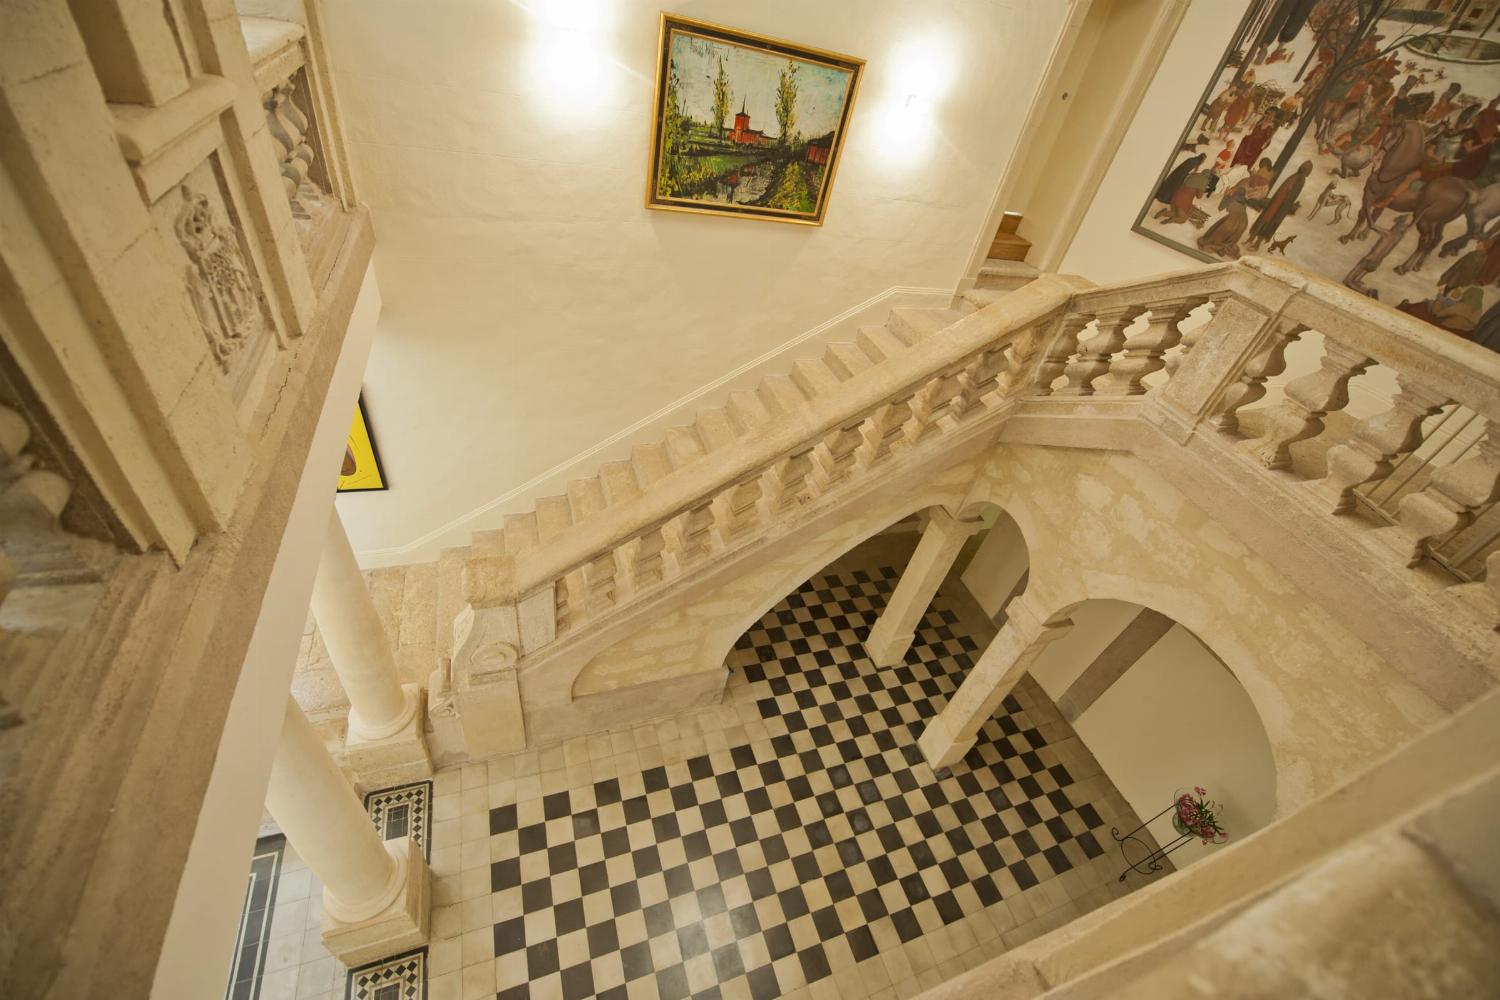 Escalier | Château de vacances dans le sud de la France